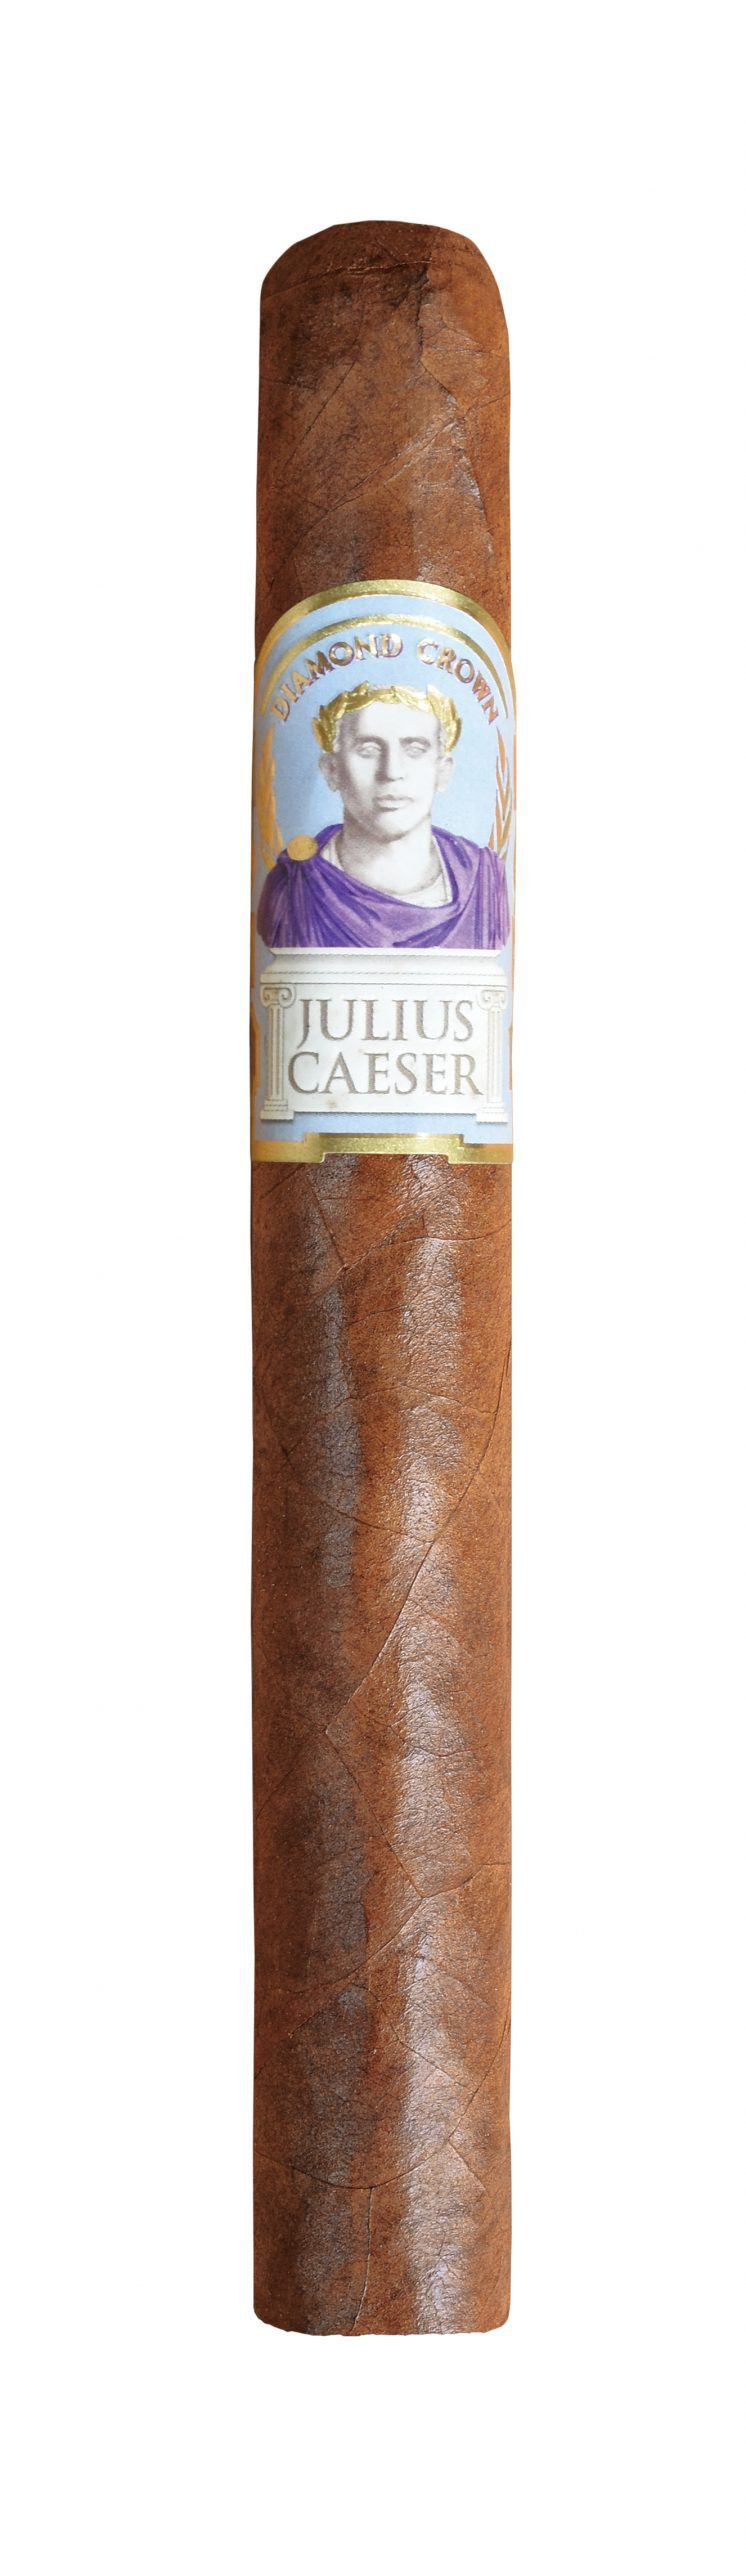 diamond crown julius caeser corona single cigar